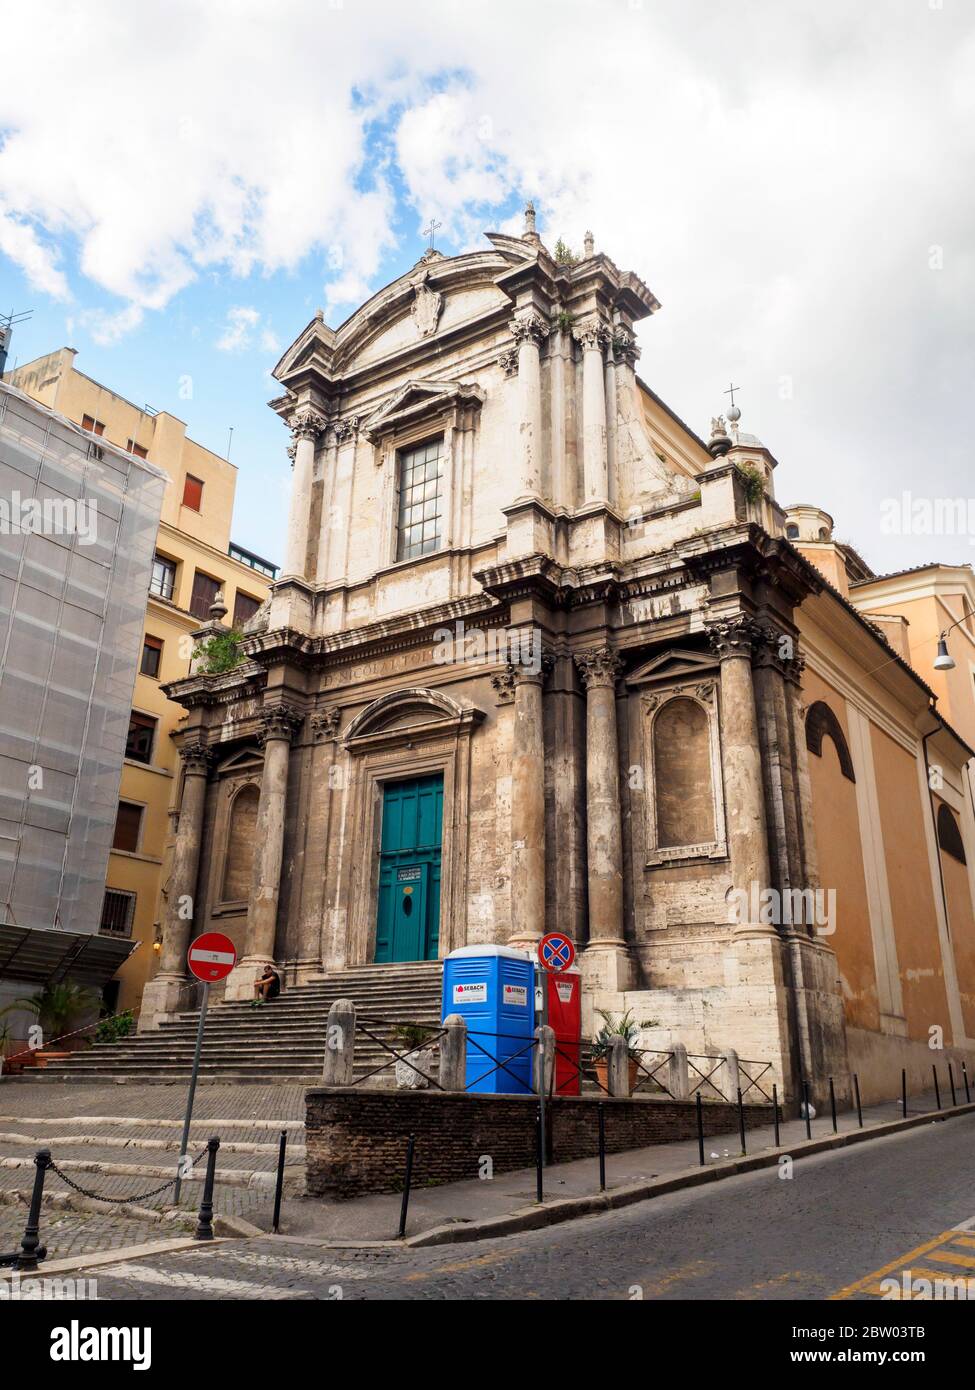 The church of San Nicola da Tolentino (Saint Nicholas of Tolentino) - Rome, Italy Stock Photo